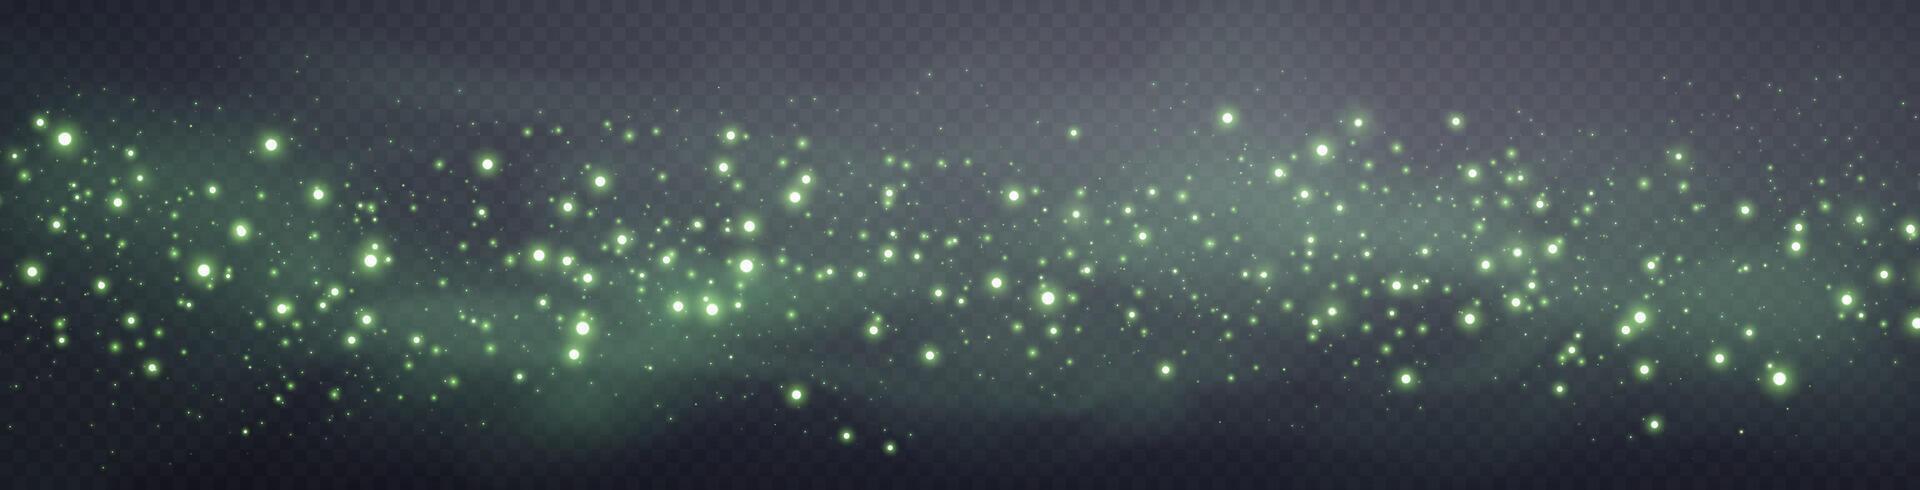 groen glinsterende stippen, deeltjes, sterren magie vonken. stof wolk gloed licht effect. groen lichtgevend points met rook. vector deeltjes